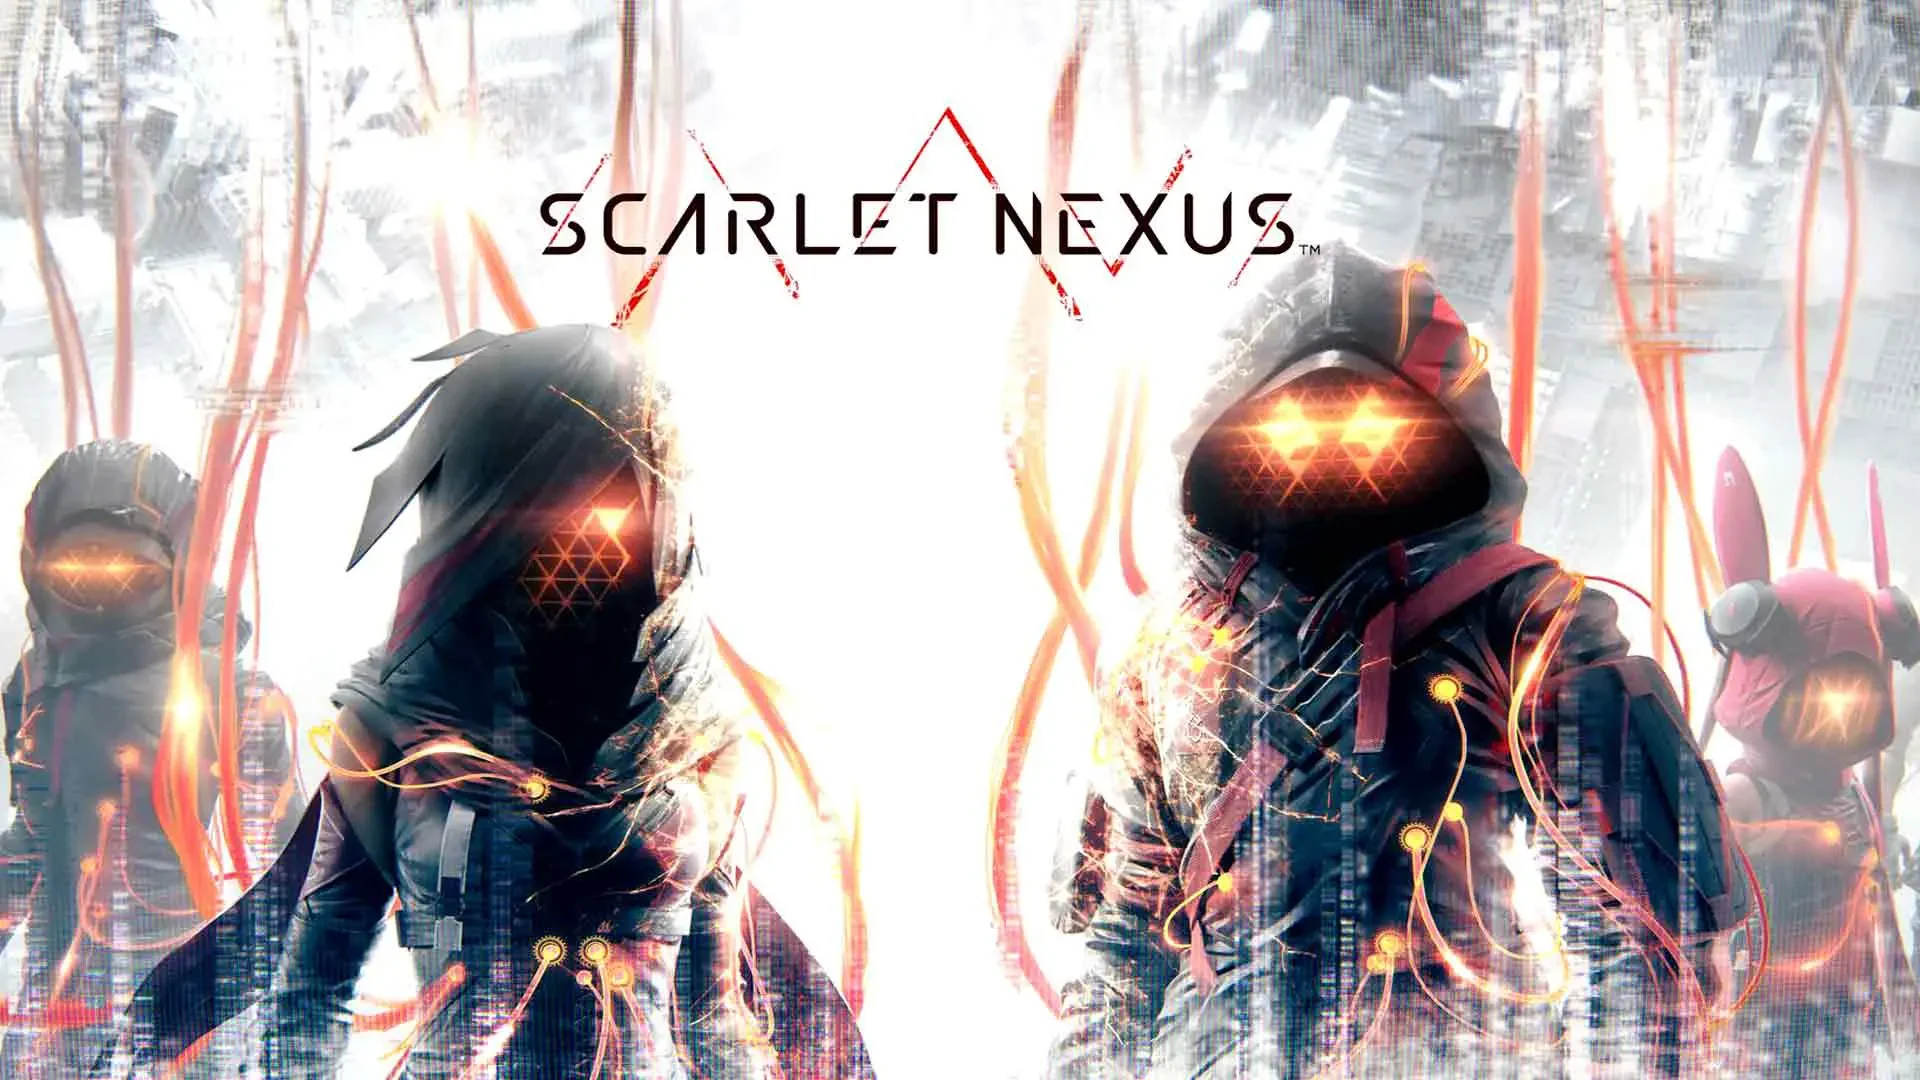 SCARLET NEXUS PC Free Download (1)